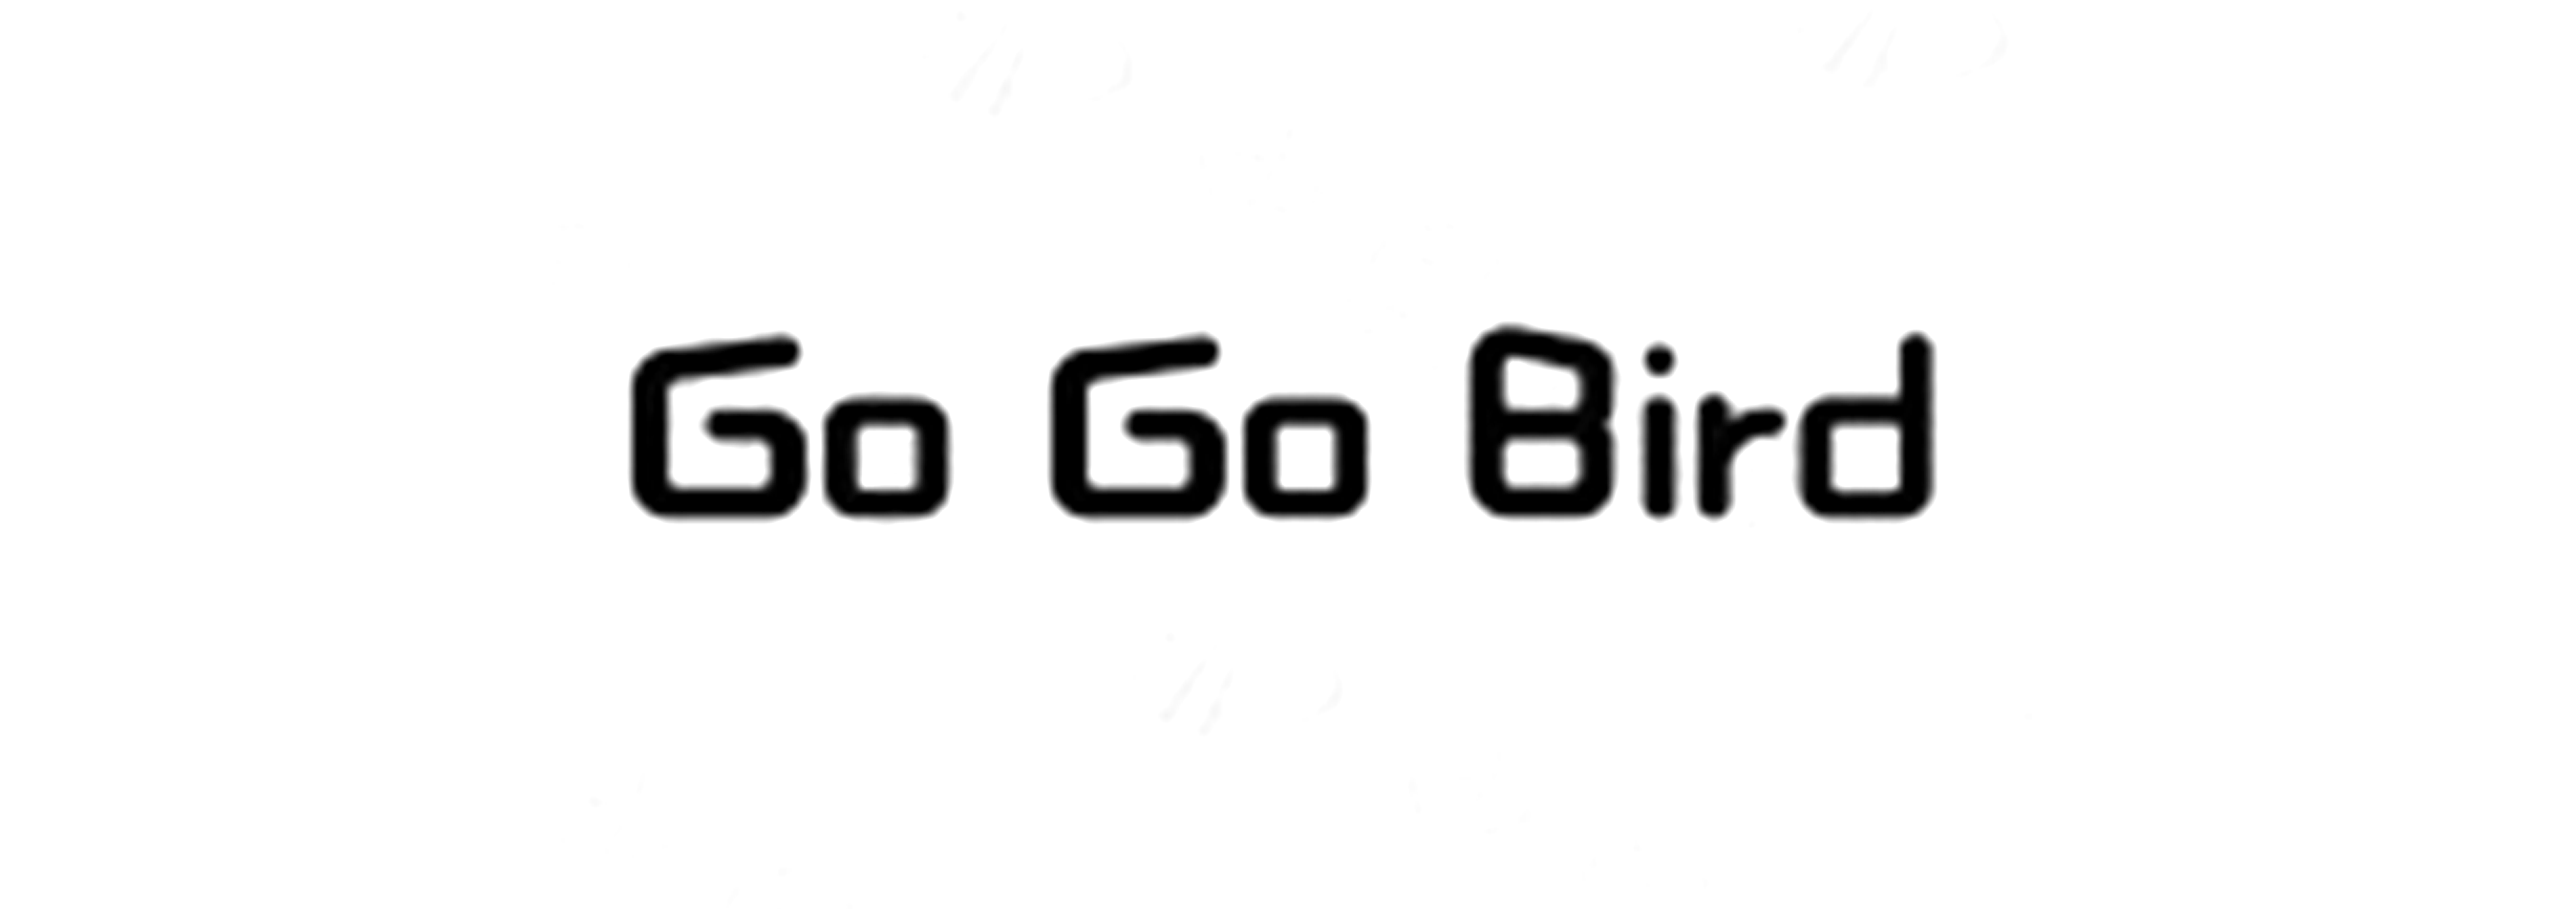 GO GO BIRD